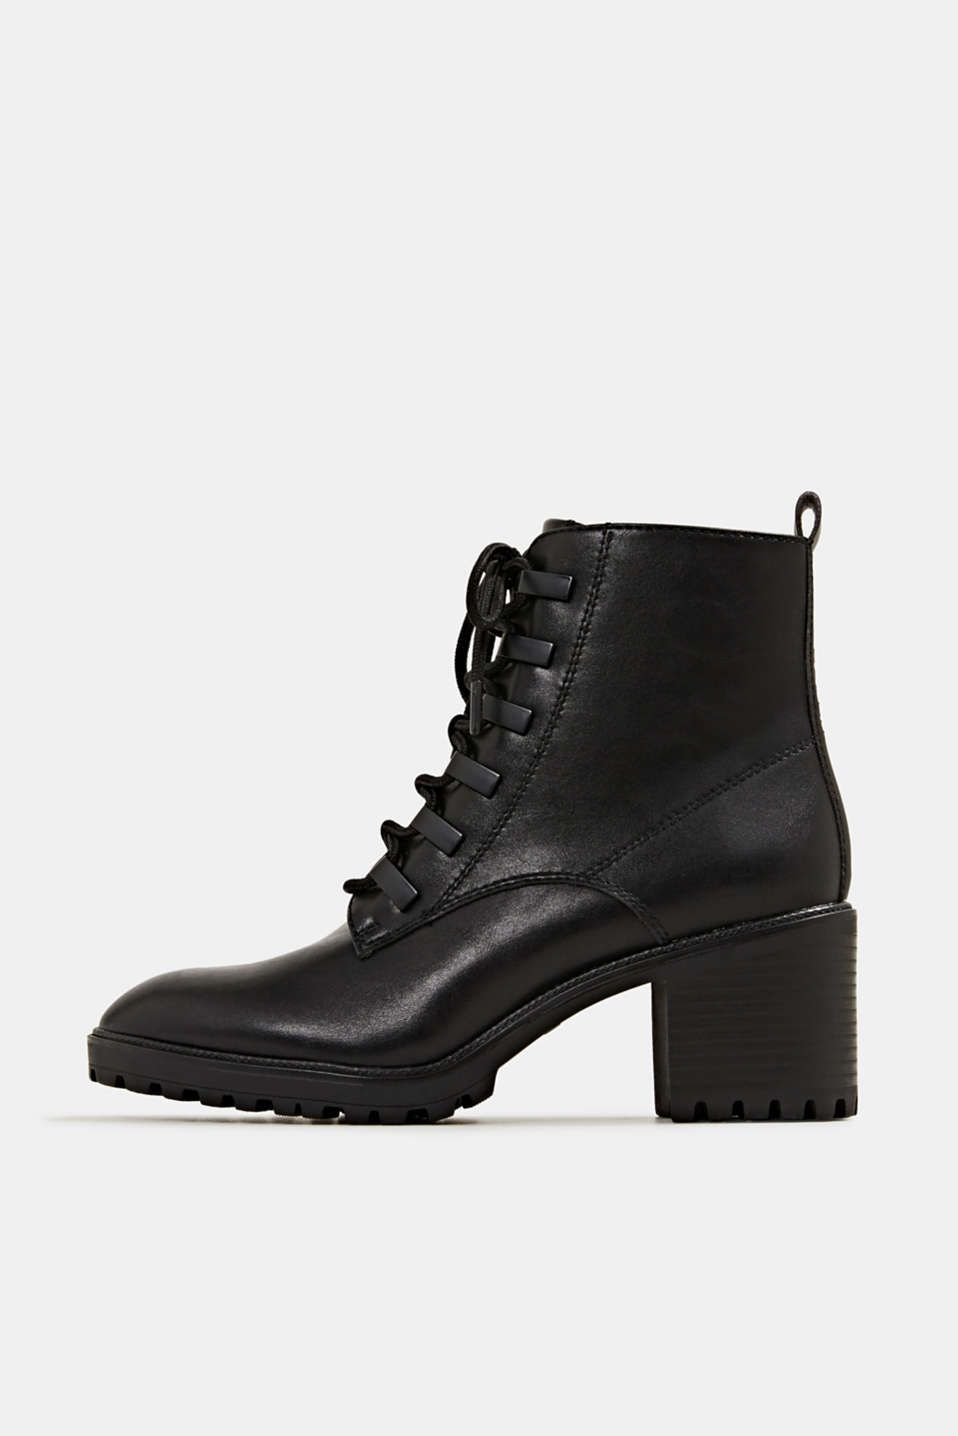 Esprit - Faux leather lace-up boots at our Online Shop